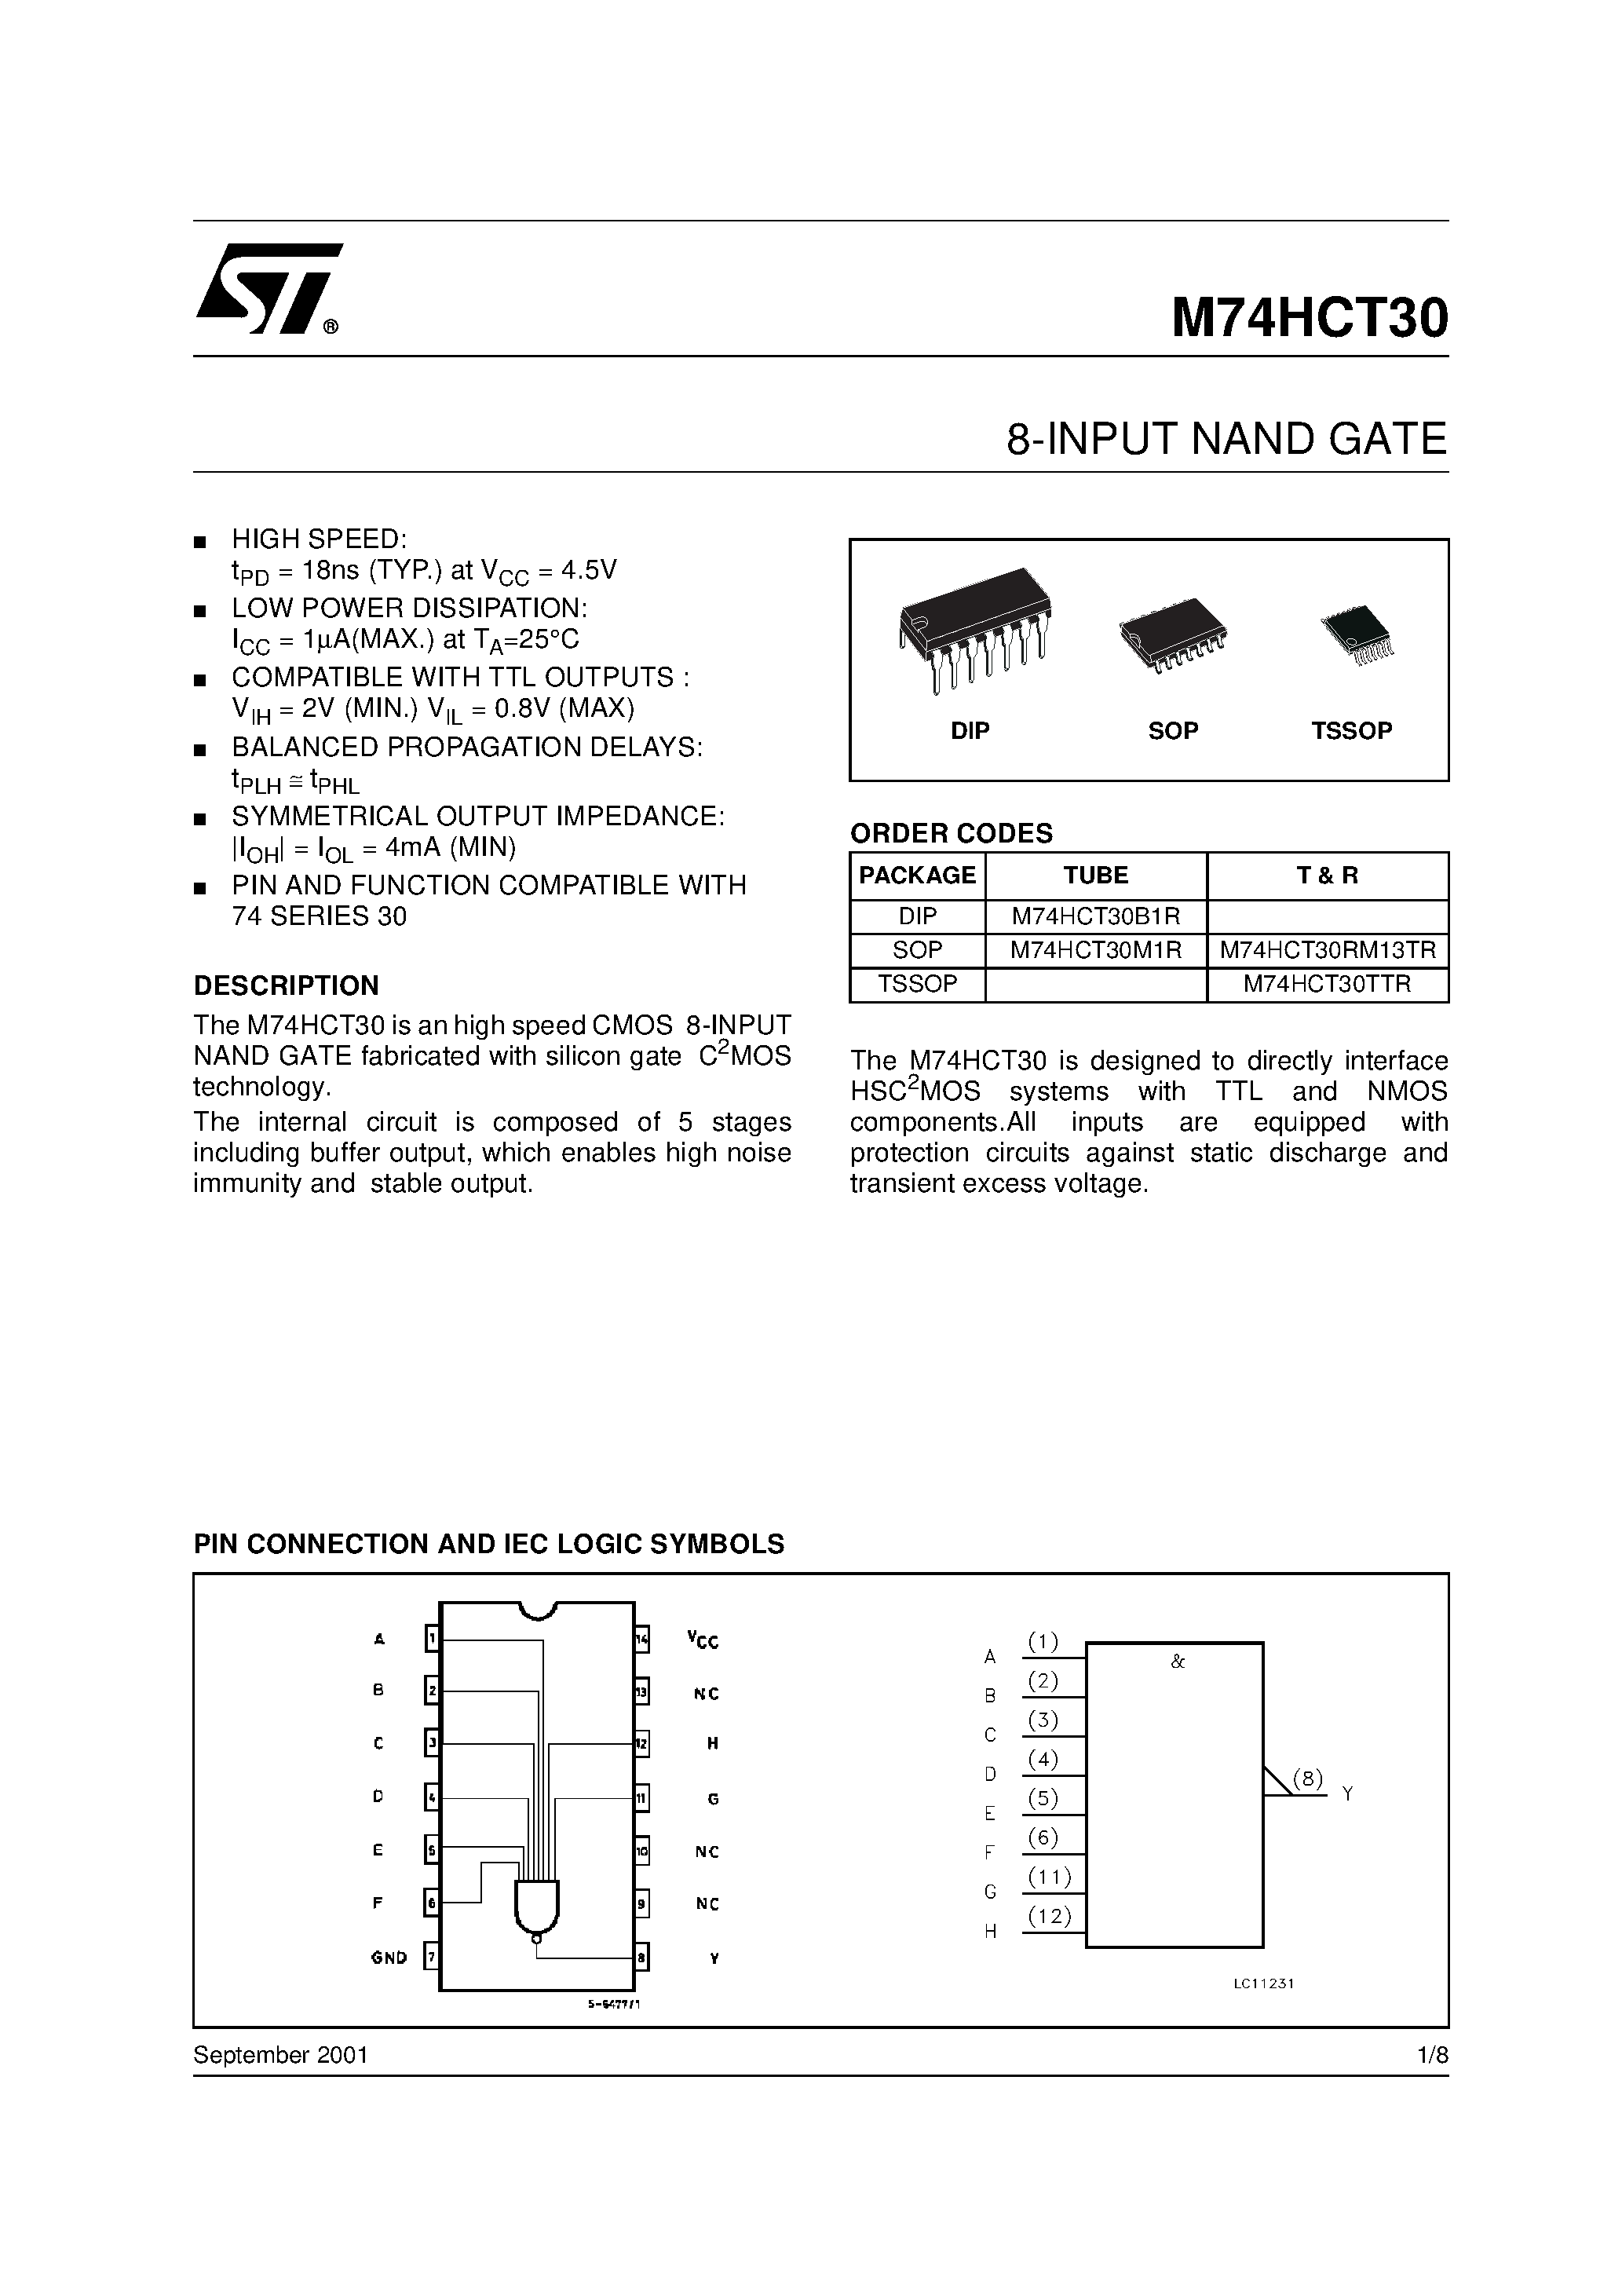 Datasheet M74HCT30 - 8-INPUT NAND GATE page 1